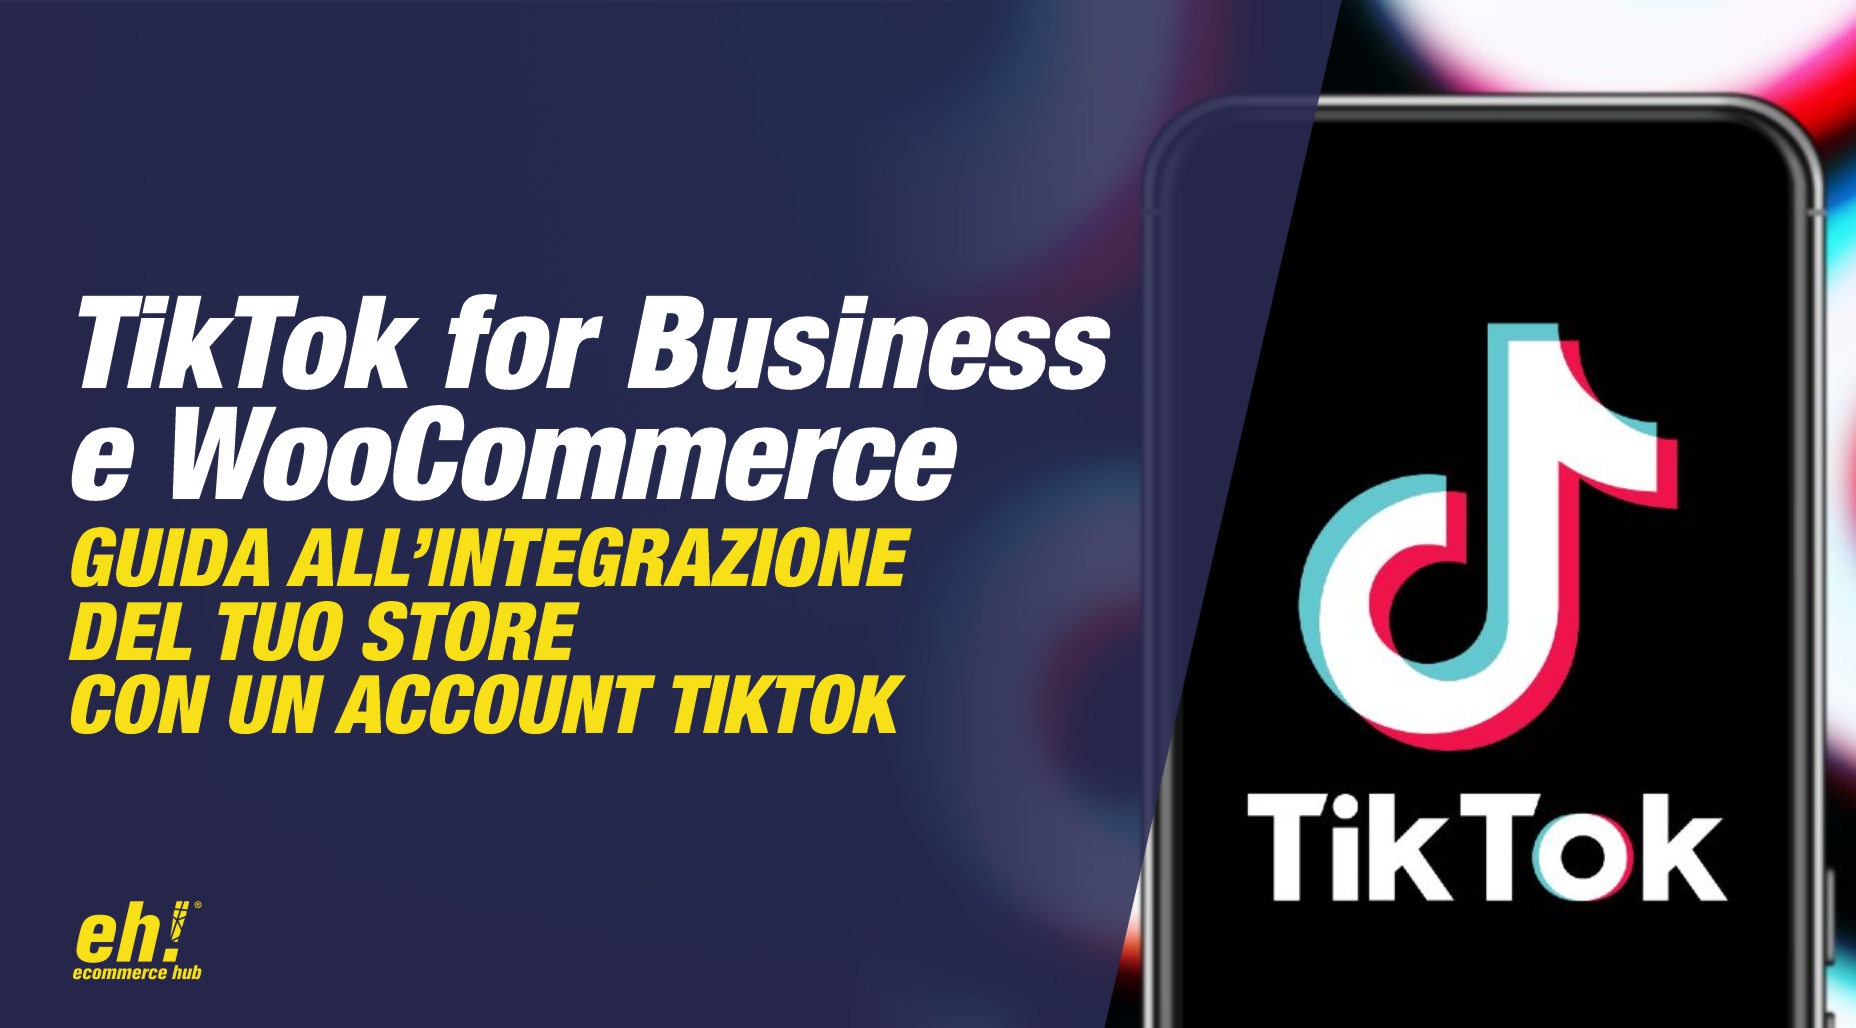 woocommerce e tiktok for business - guida all'integrazione del tuo ecommerce store con un account tiktok